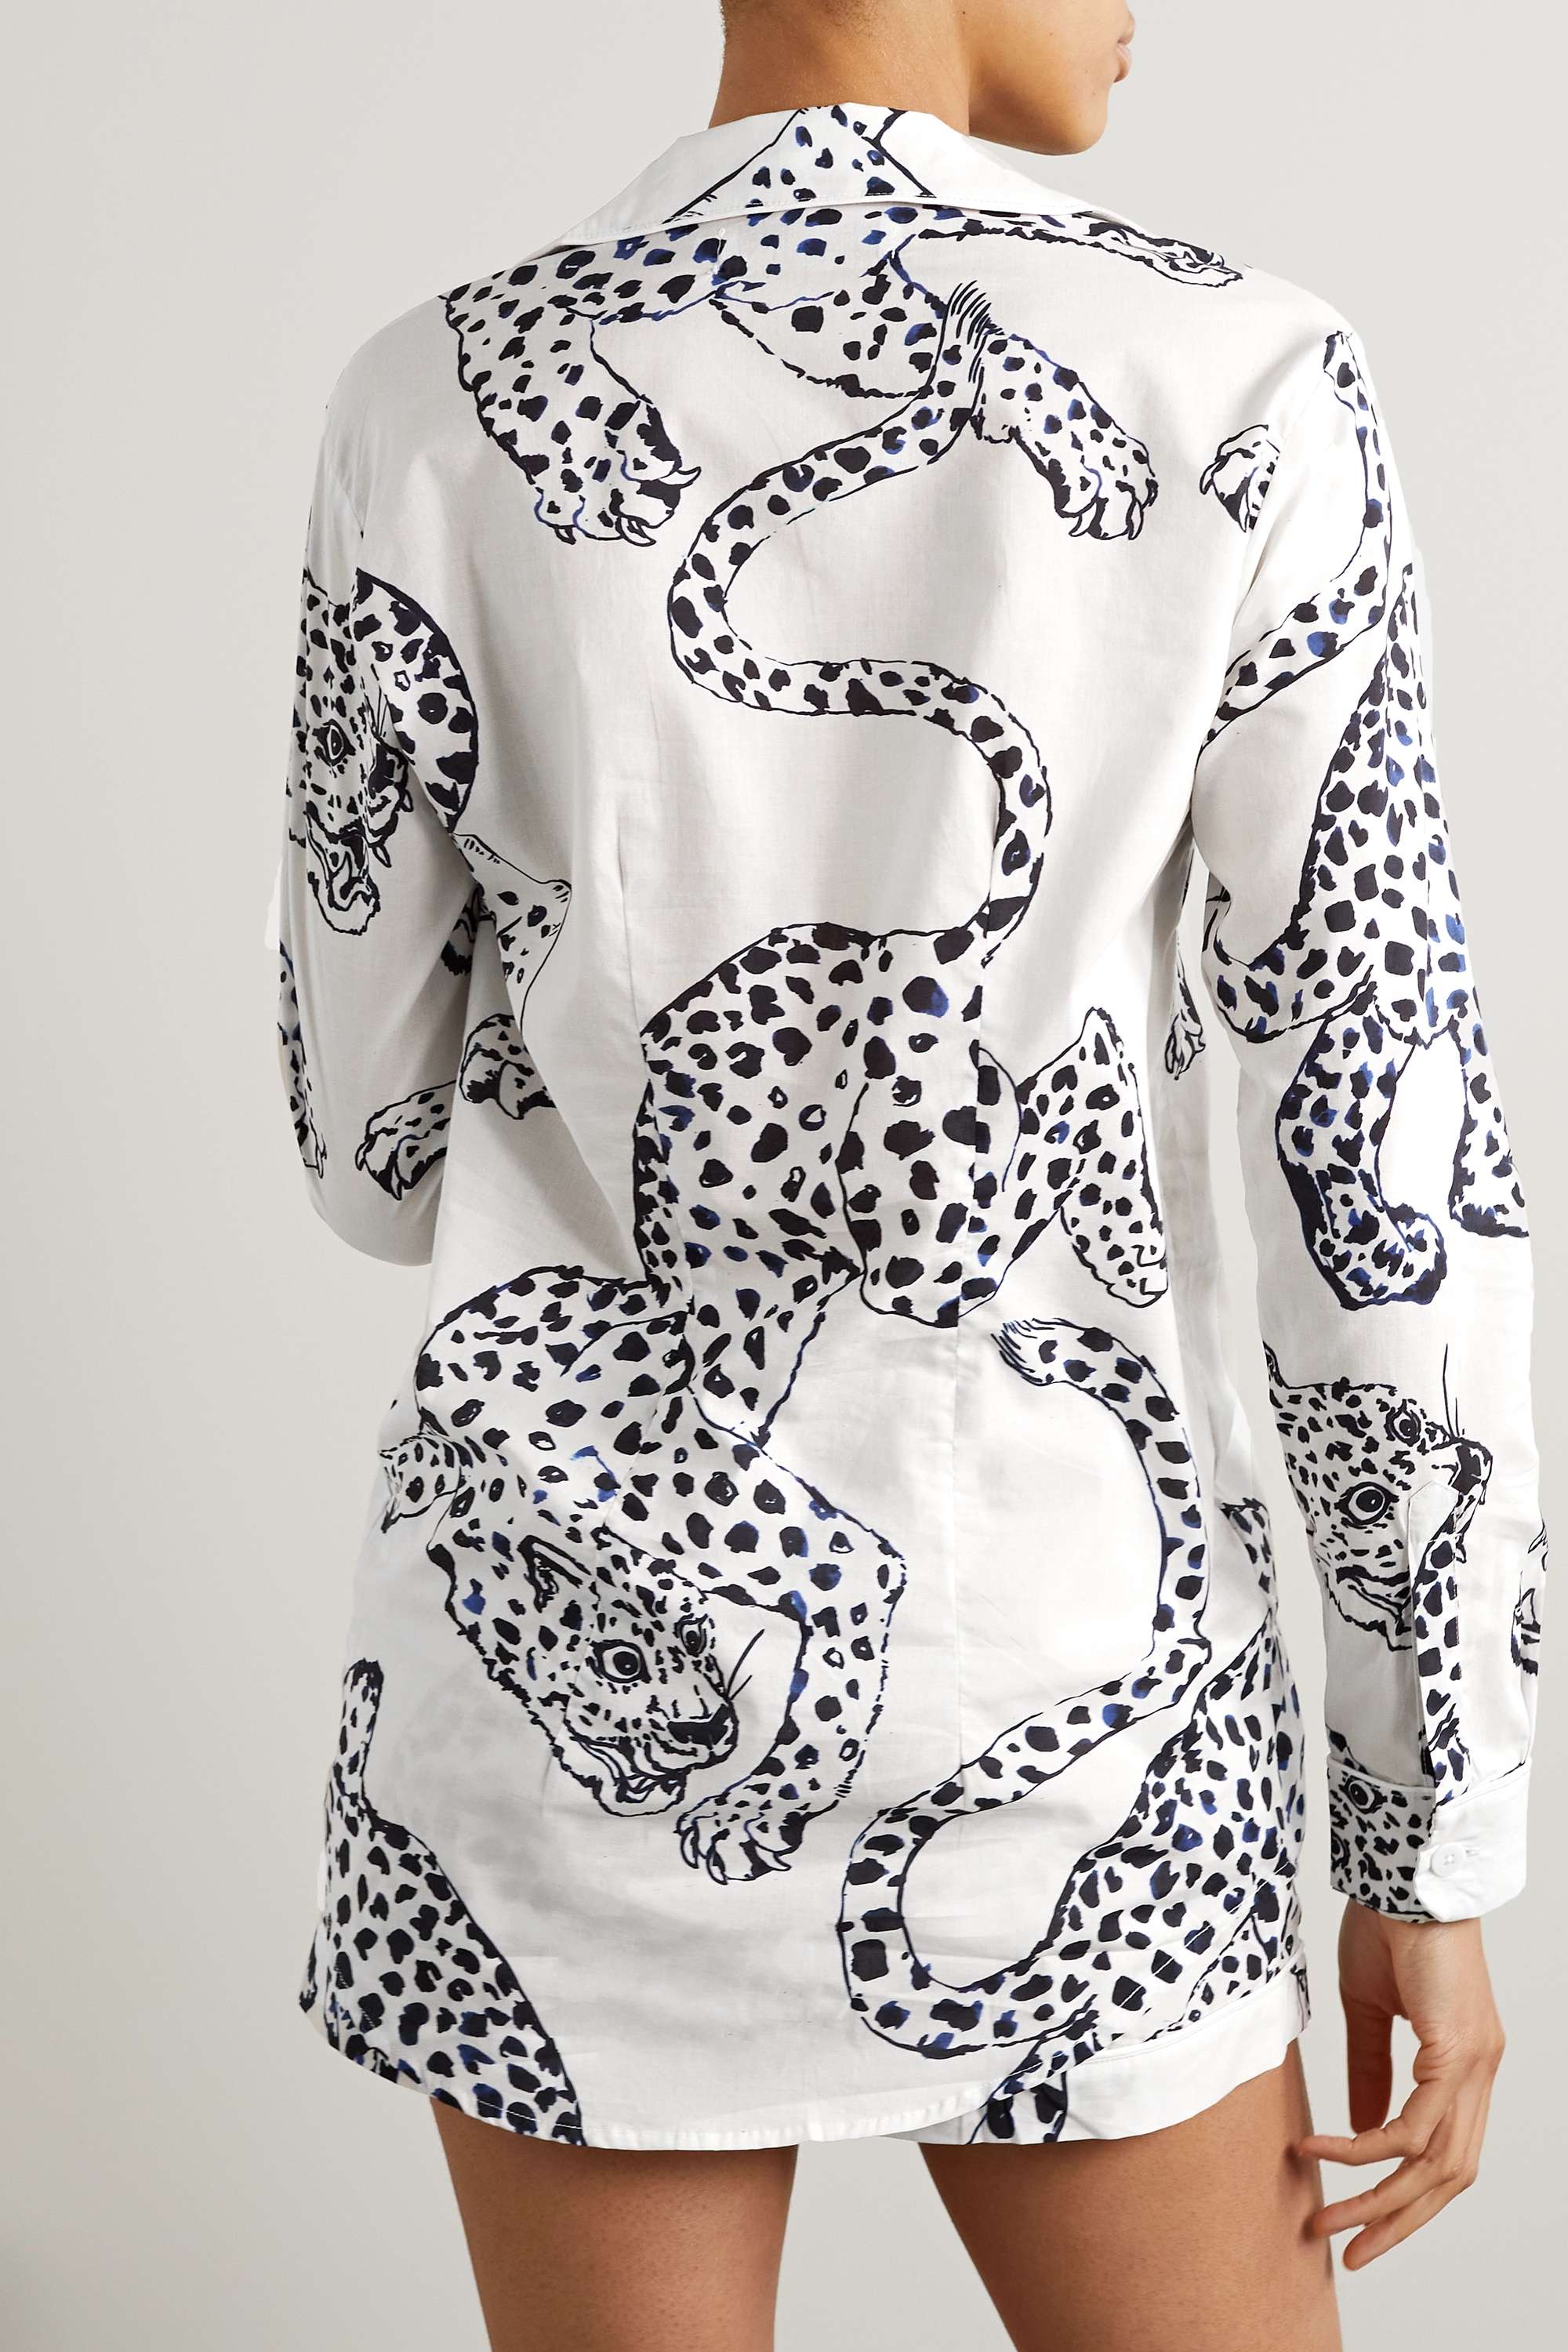 DESMOND & DEMPSEY + NET SUSTAIN пижамный комплект из органического хлопка и вуали с принтом, белый amy dempsey destination art